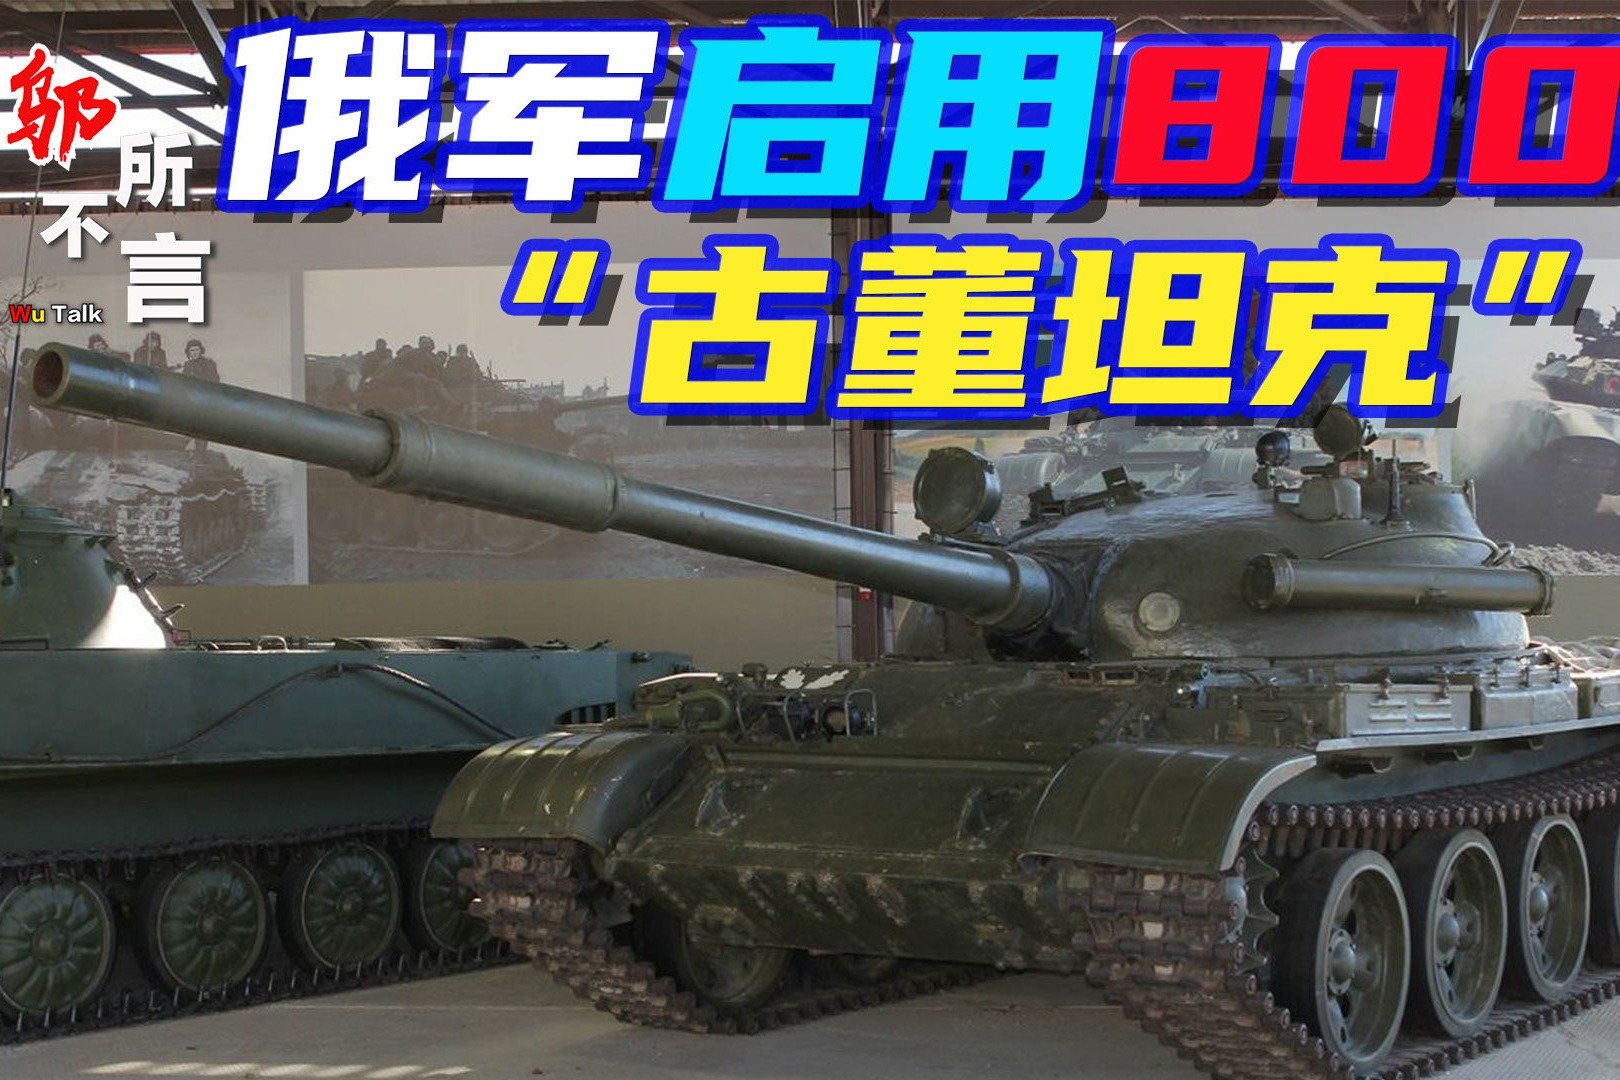 坦克300边境限定版上市 28万限量3000台 - 行业动态 _ 车城网